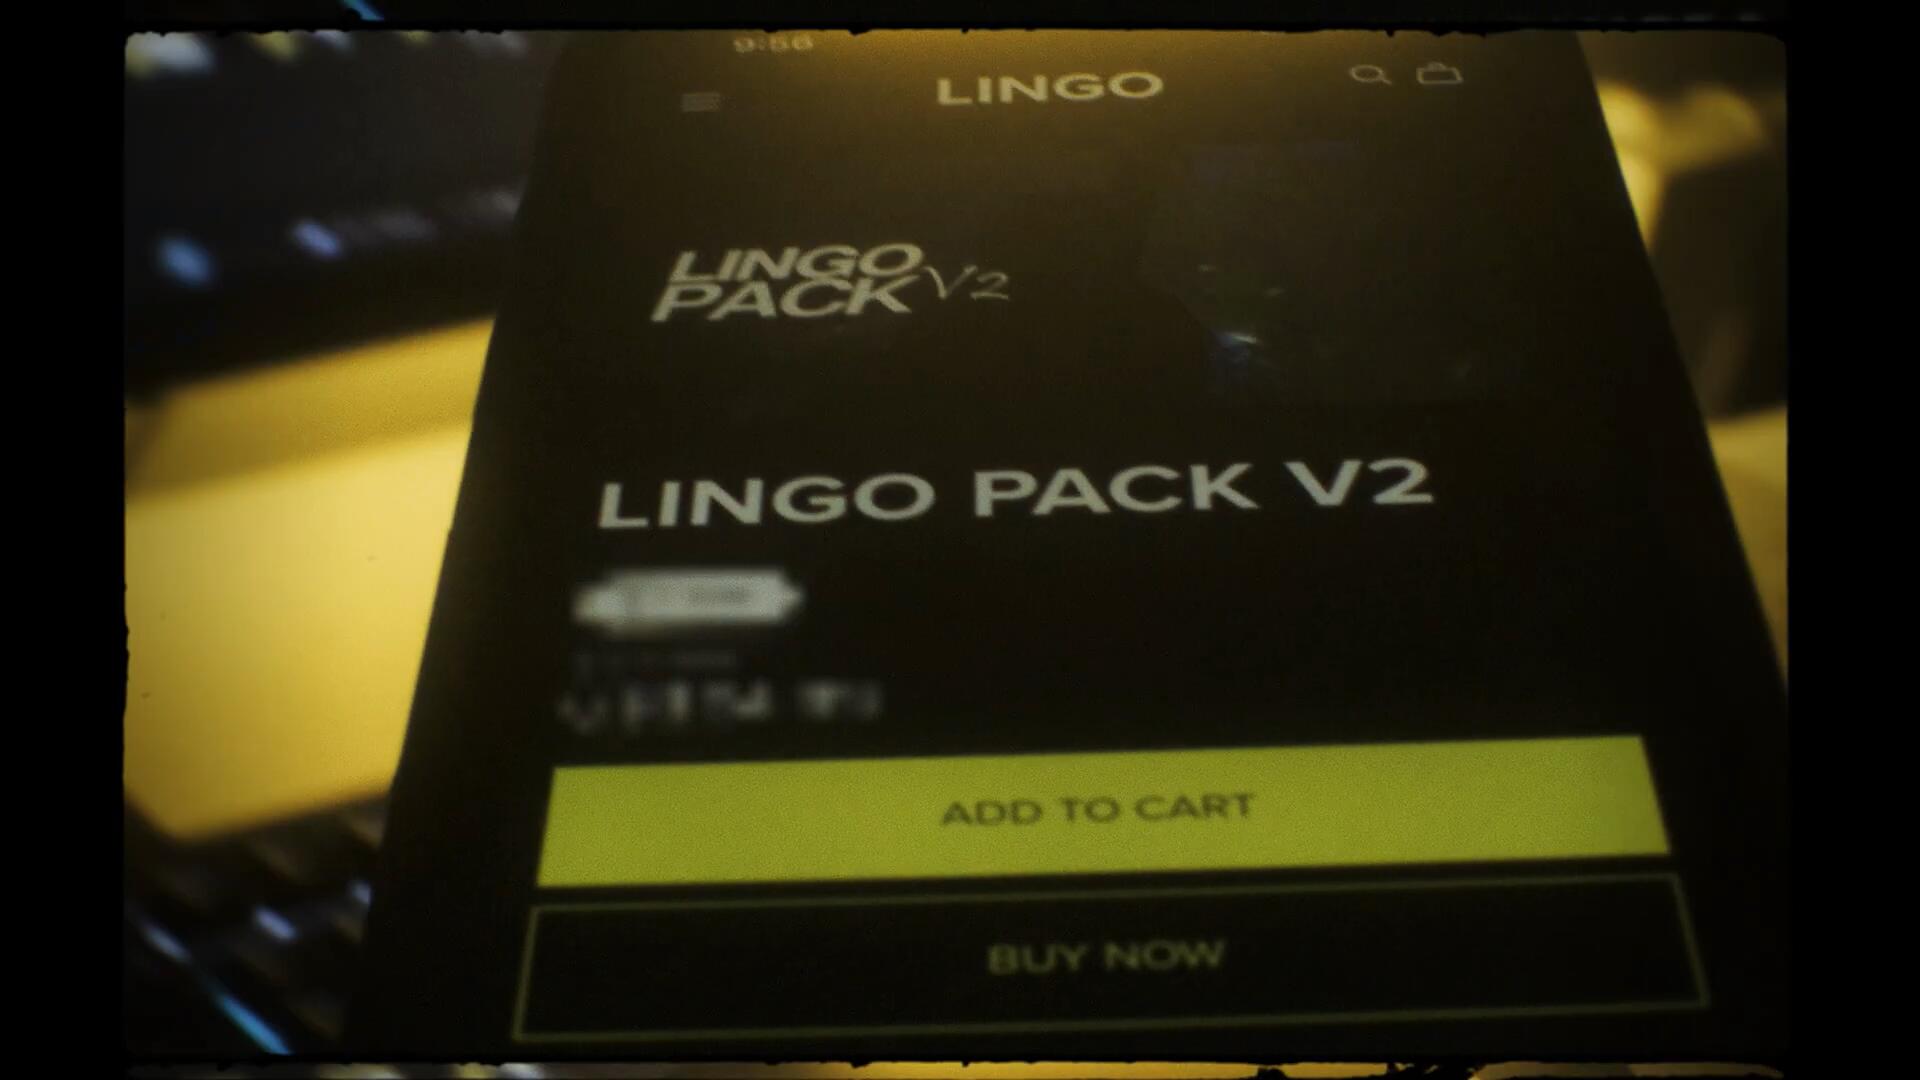 300个嘻哈说唱画面摇晃旋转定格运动AE预设效果包 LINGO PACK V2 插件预设 第2张